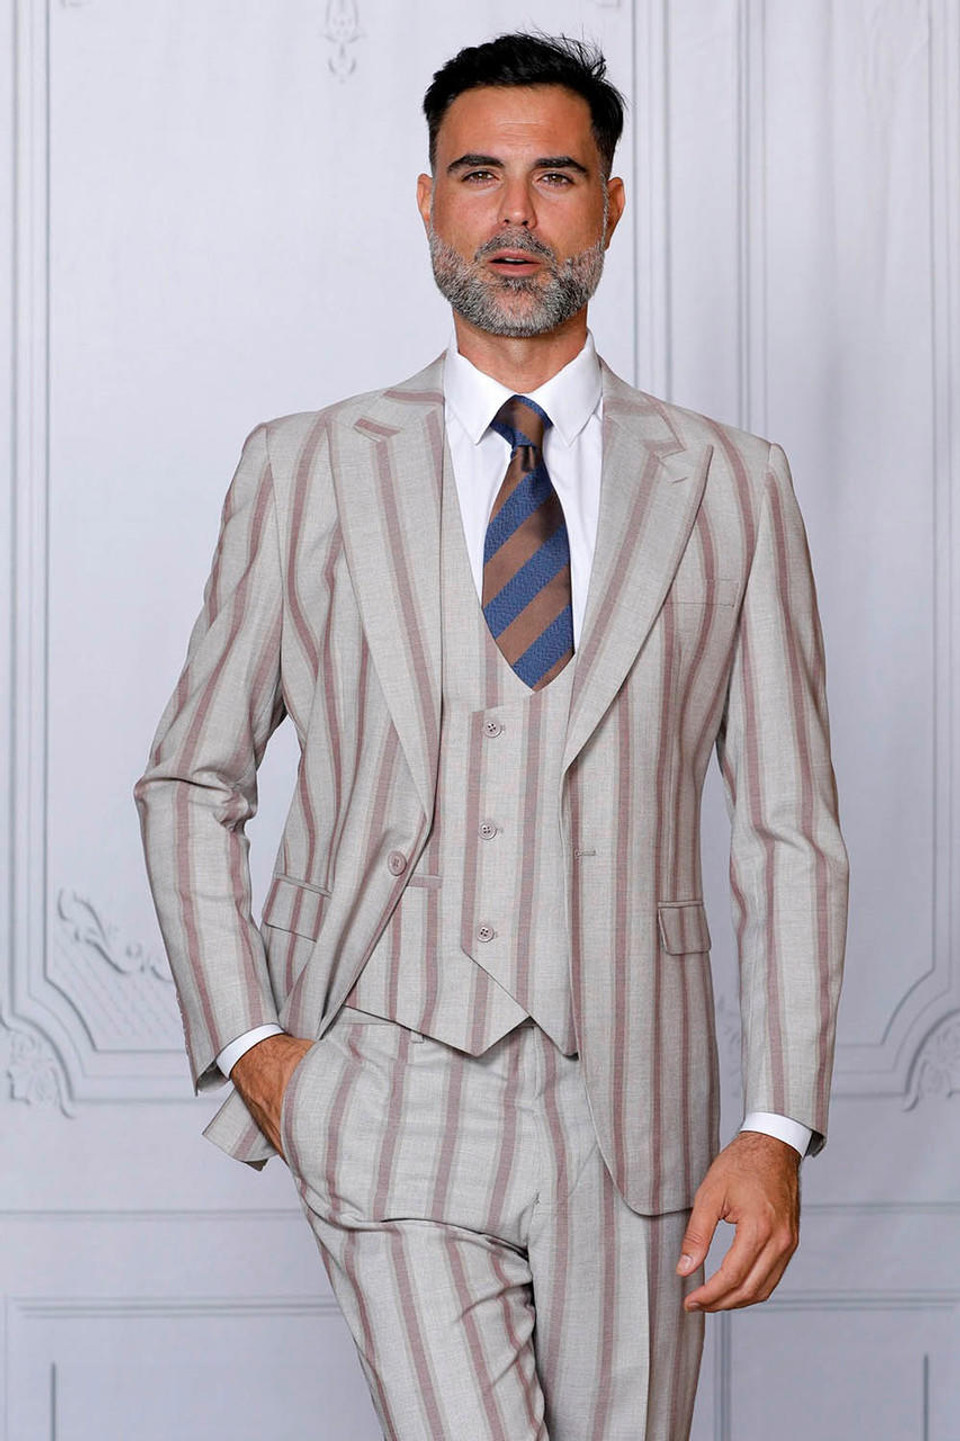 Mens Suits | Affordable Stylish Suits | ContempoSuits.com